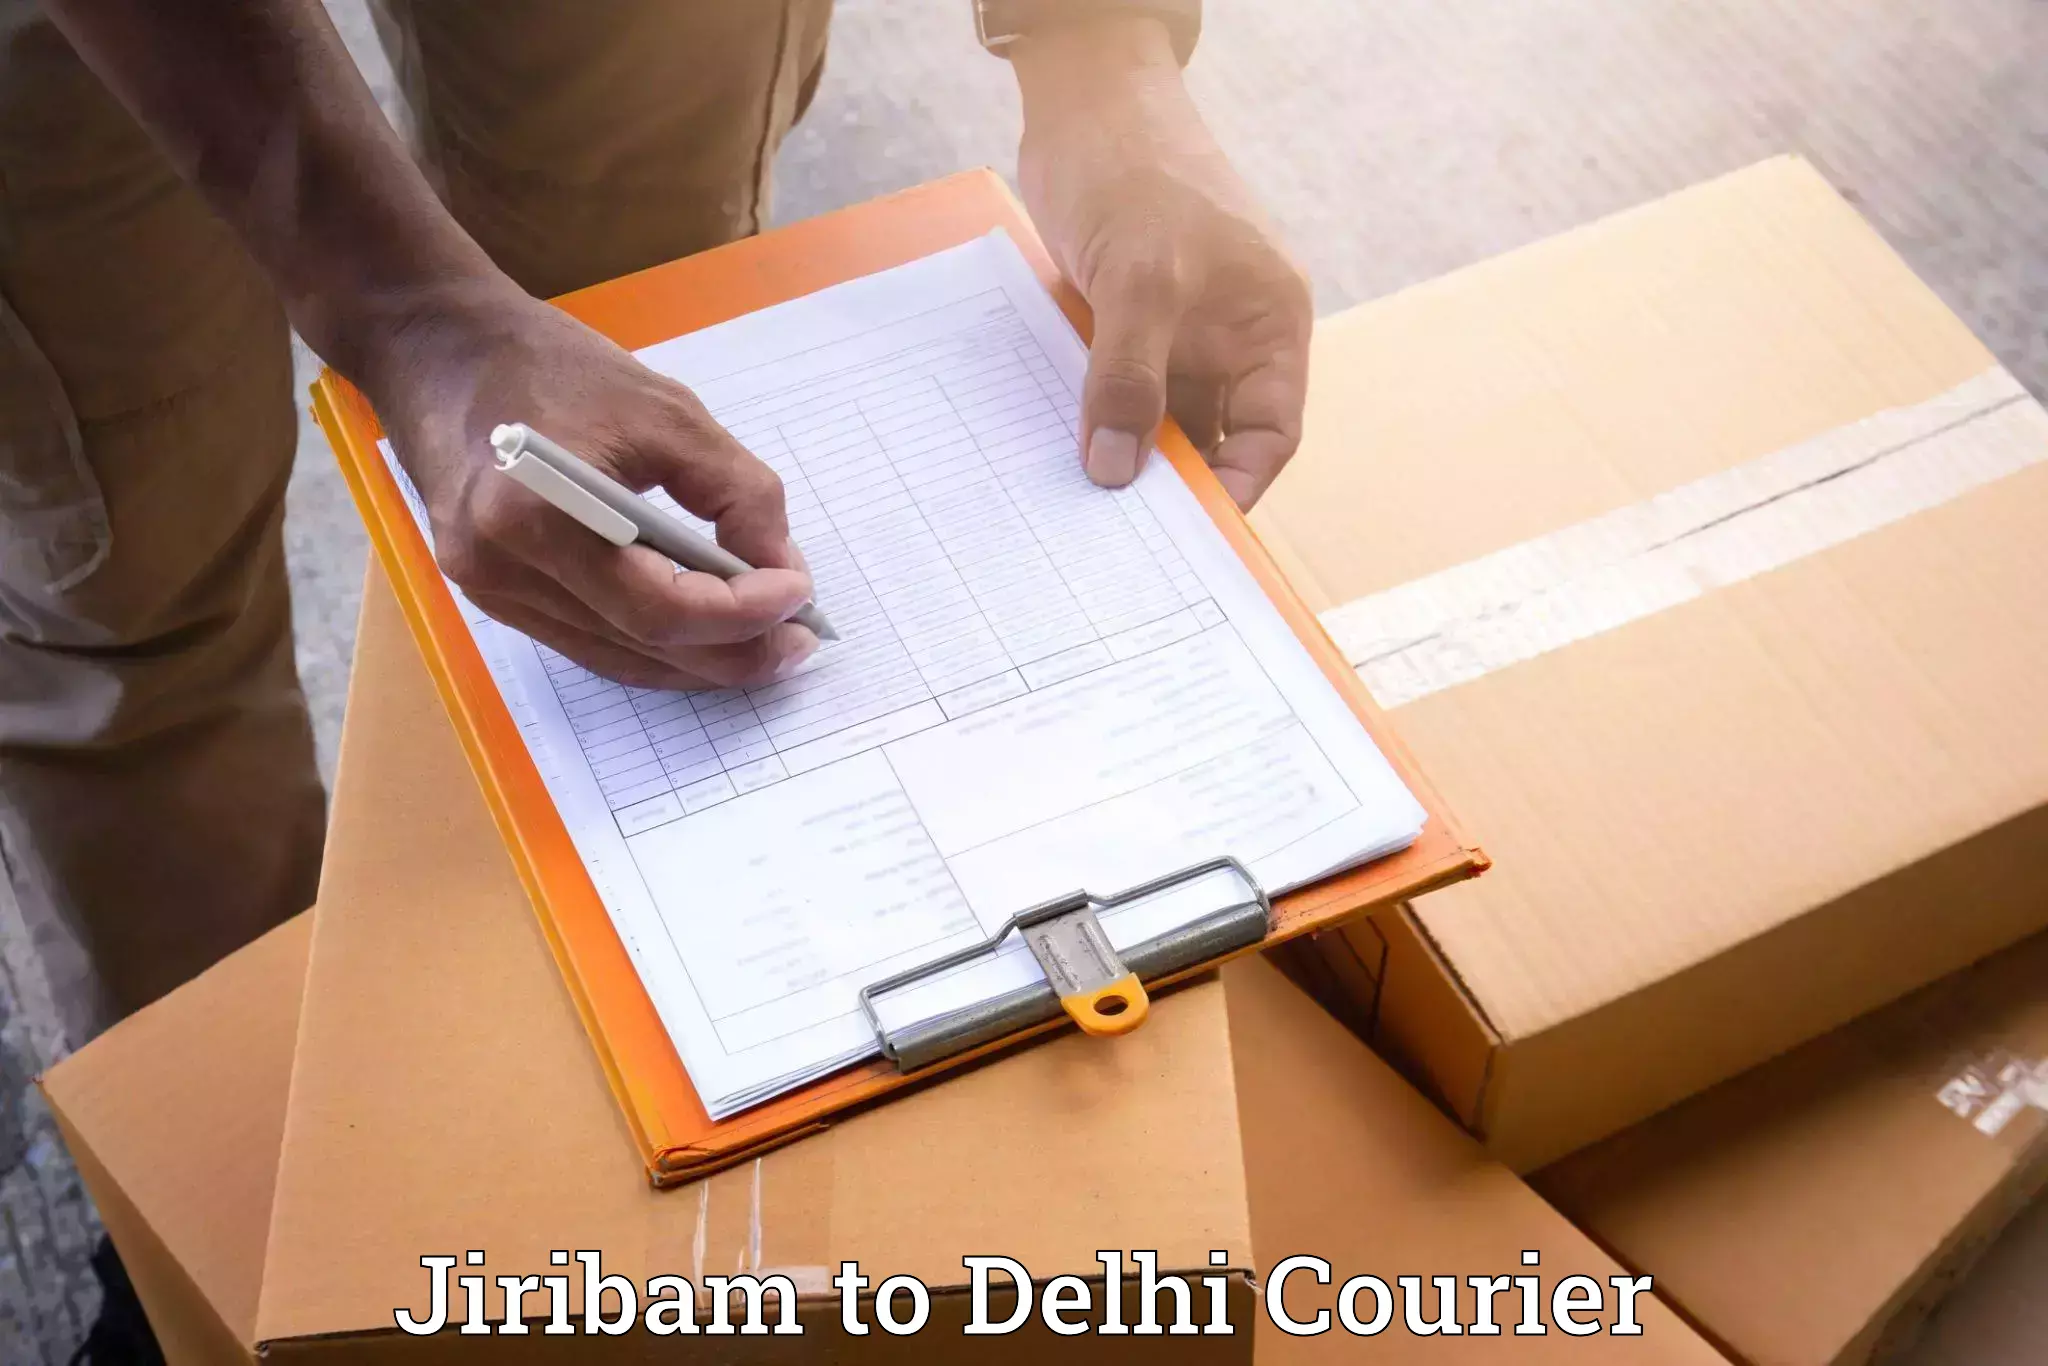 Furniture moving strategies Jiribam to Jawaharlal Nehru University New Delhi